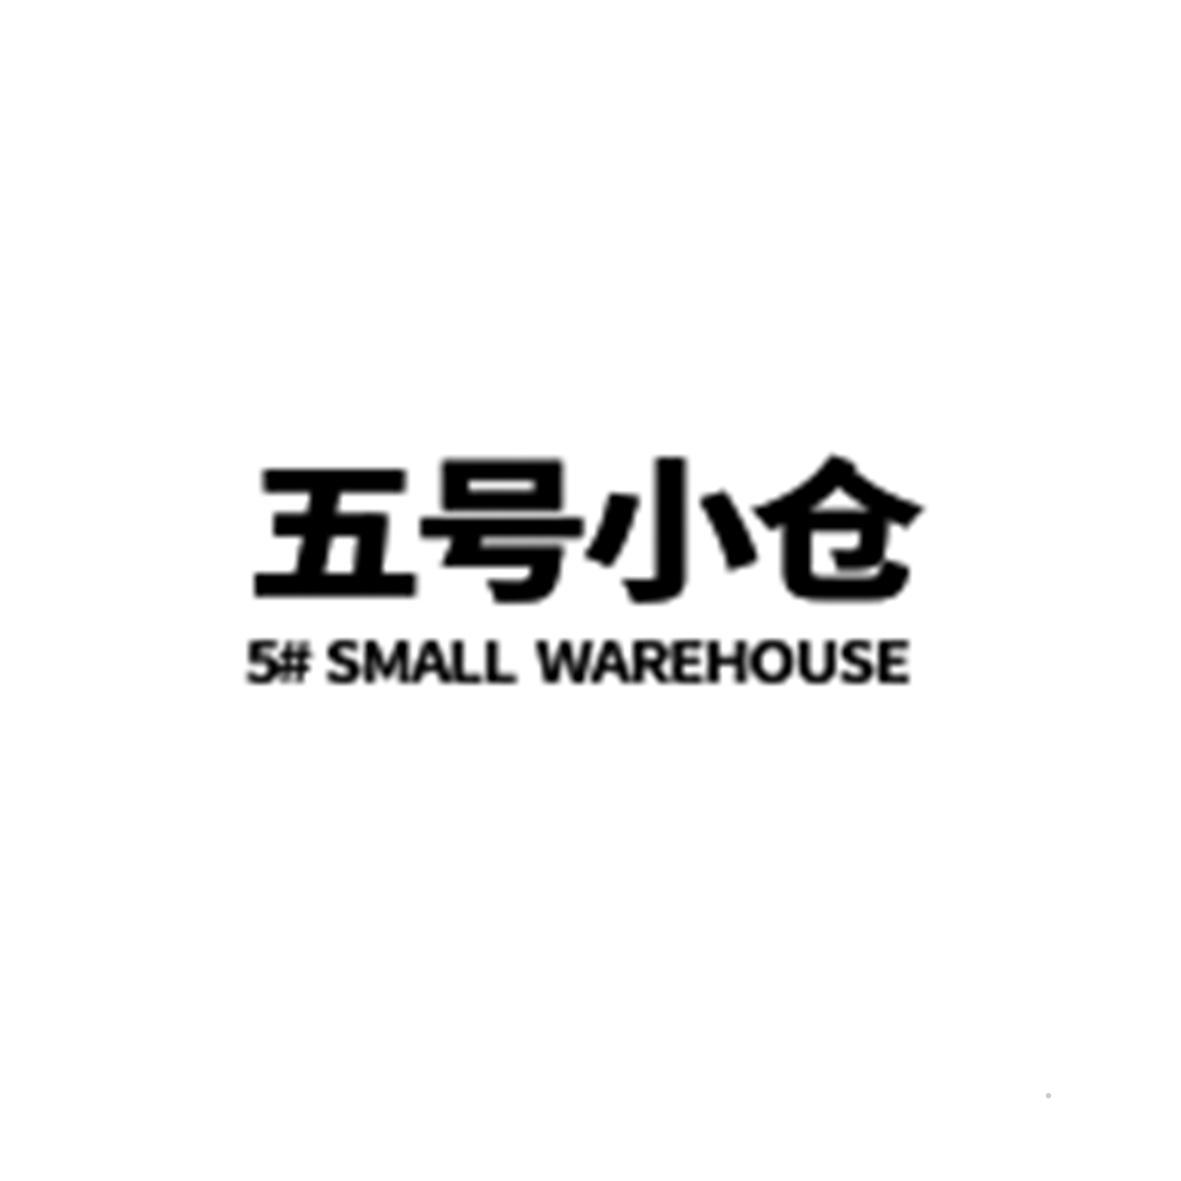 五号小仓 5# SMALL WAREHOUSE